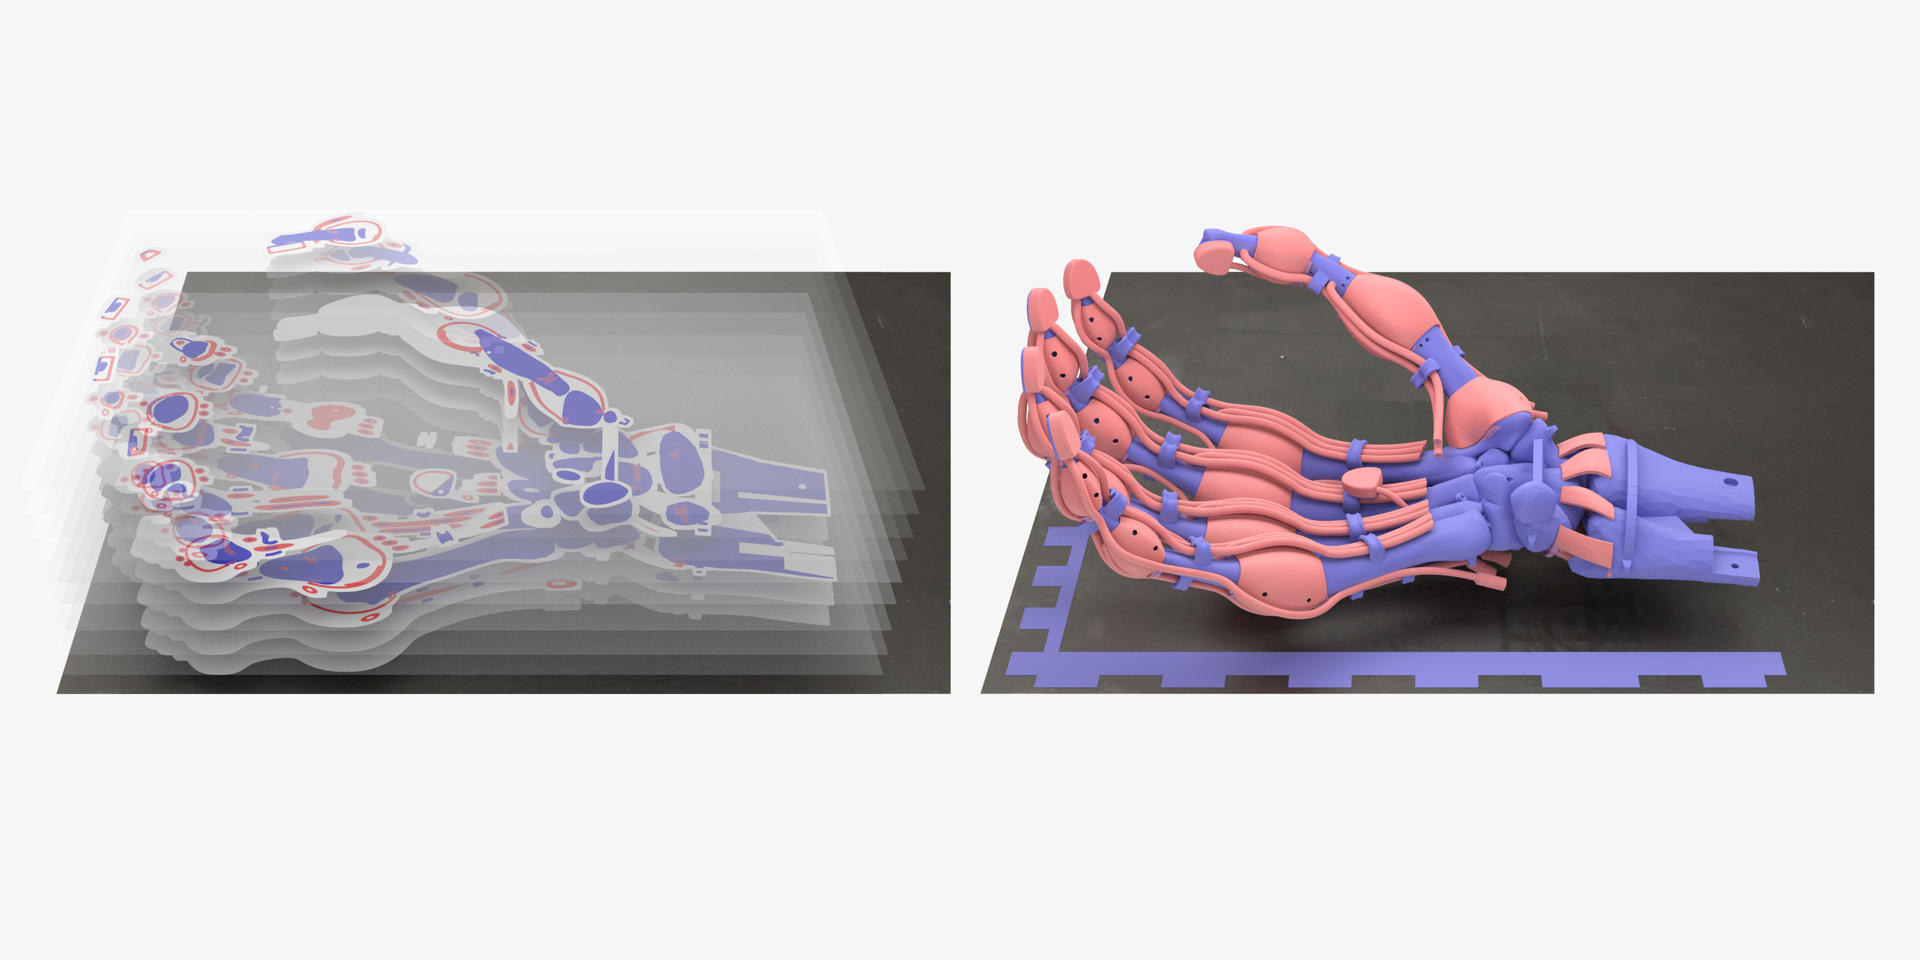 Imagen de Inkbit 3D, de la pinza robótica impresa en 3D con forma de mano humana y controlada por 19 tendones del confundador de esta empresa y científico Javier Ramos. Foto: fuente externa.